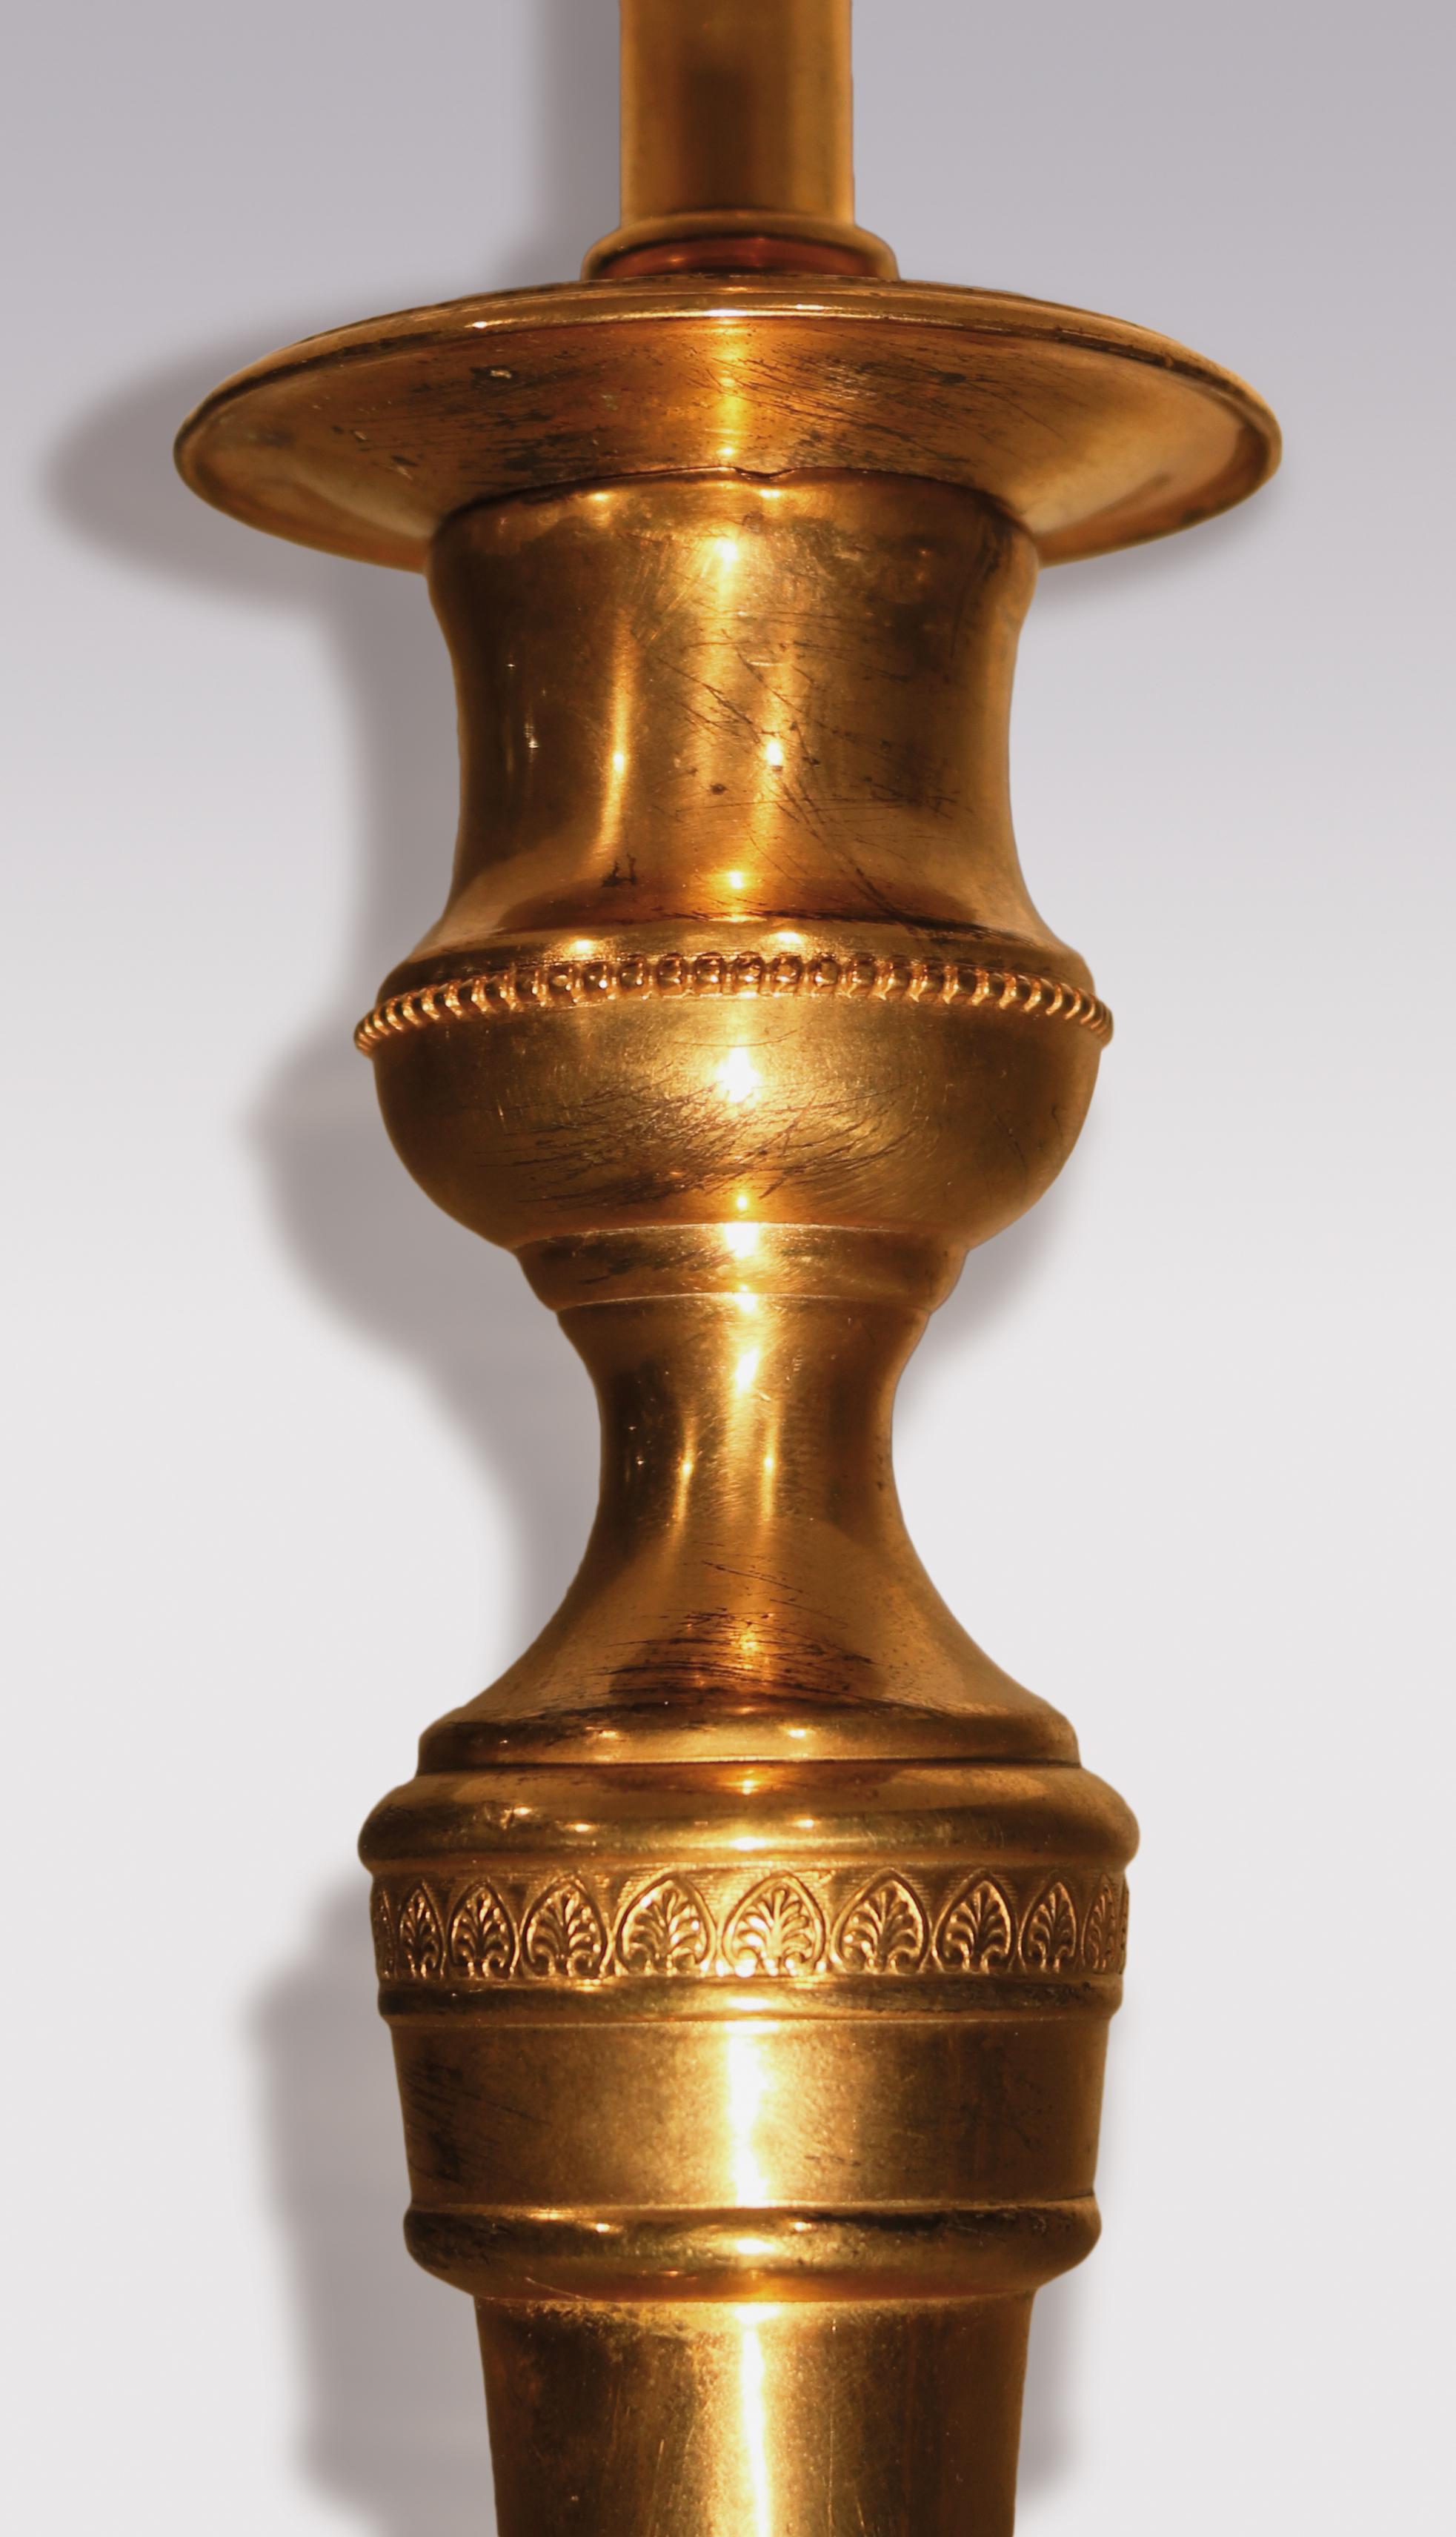 Ein Paar Ormolu-Kerzenleuchter aus dem frühen 19. Jahrhundert mit perlenbesetzten Düsen, die auf sich verjüngenden Stielen mit Löwentatzenfüßen stehen, die auf kreisförmigen Basen enden. Jetzt in Lampen umgewandelt. Höhe des Kerzenhalters 9